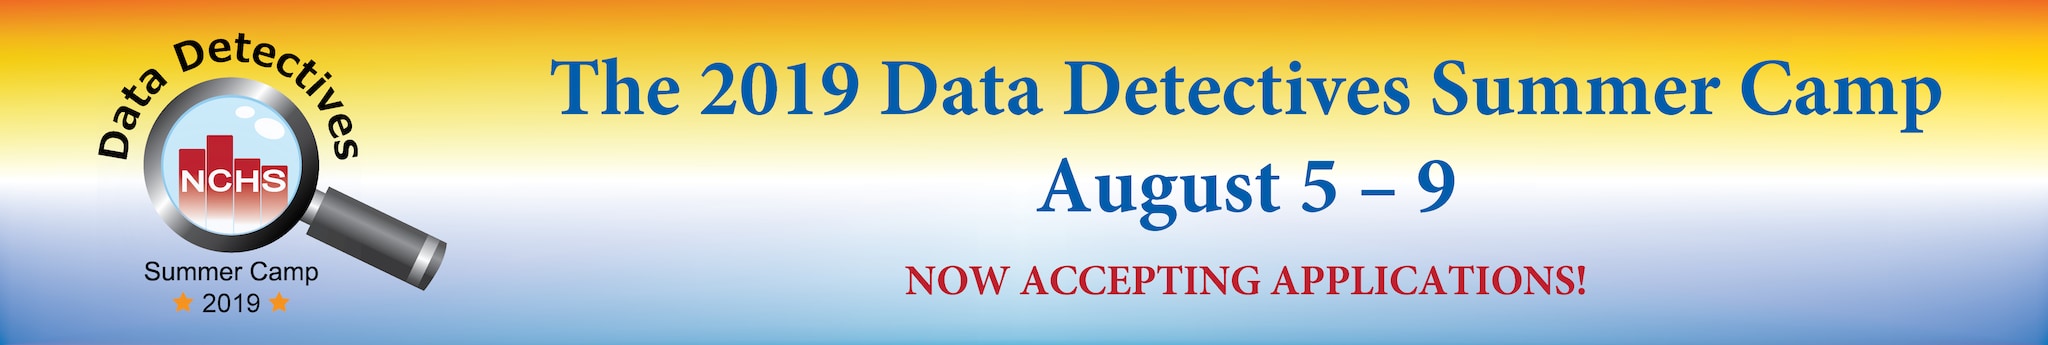 Data Detectives Summer Camp 2019 Banner Image